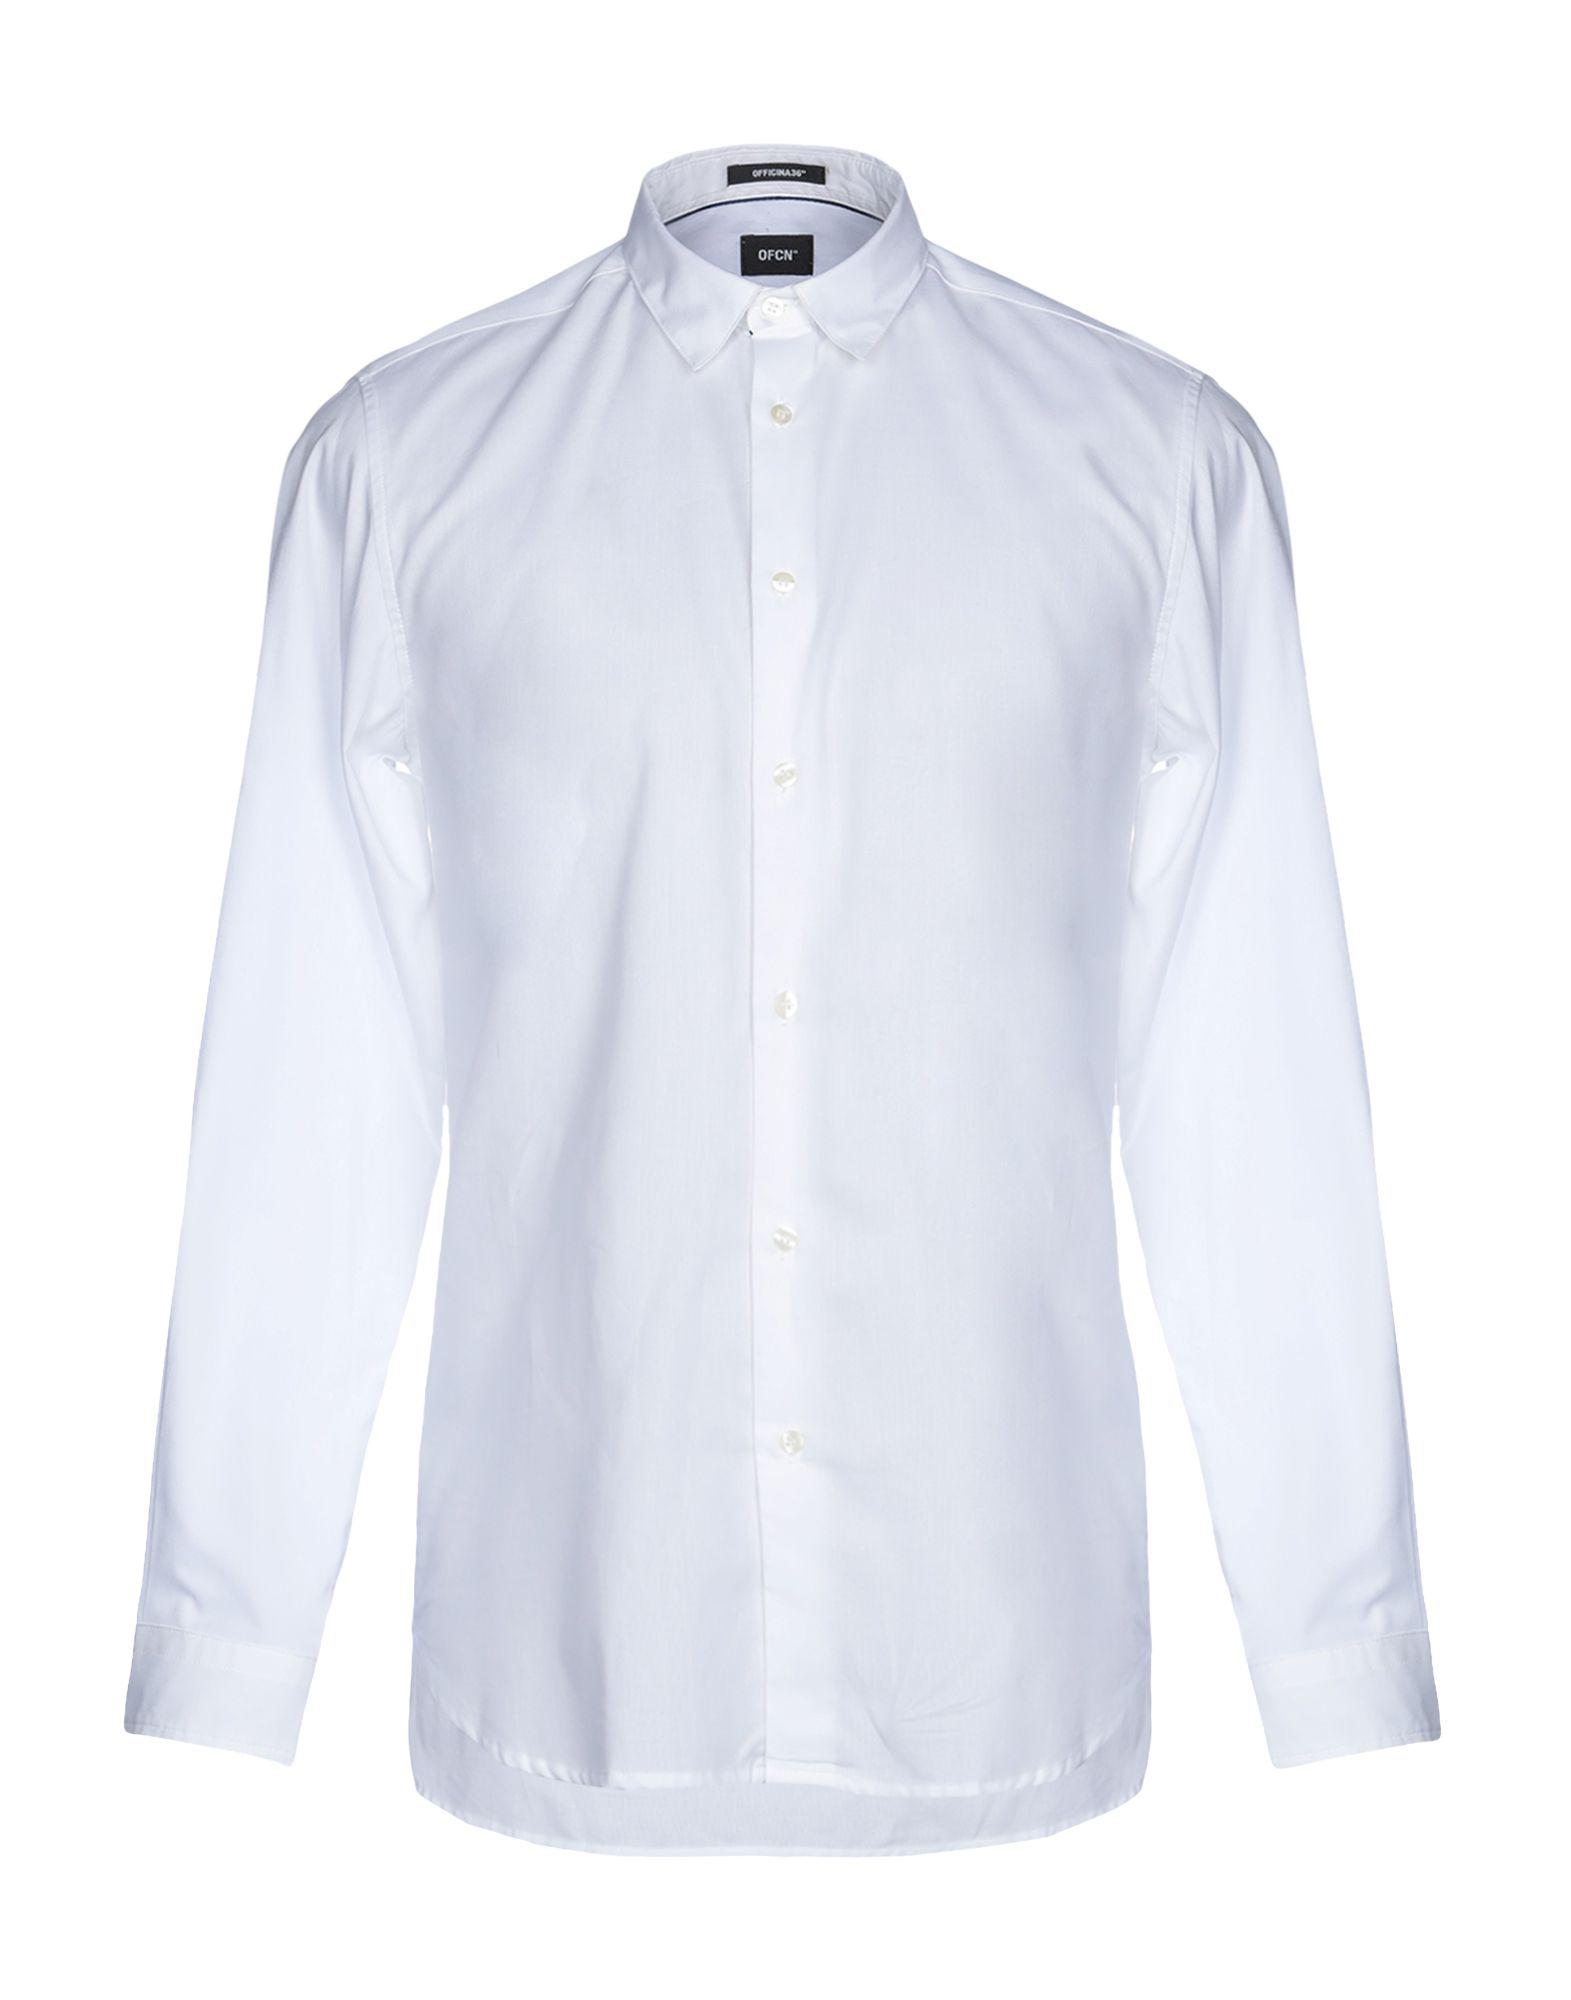 Lyst - Officina 36 Shirt in White for Men